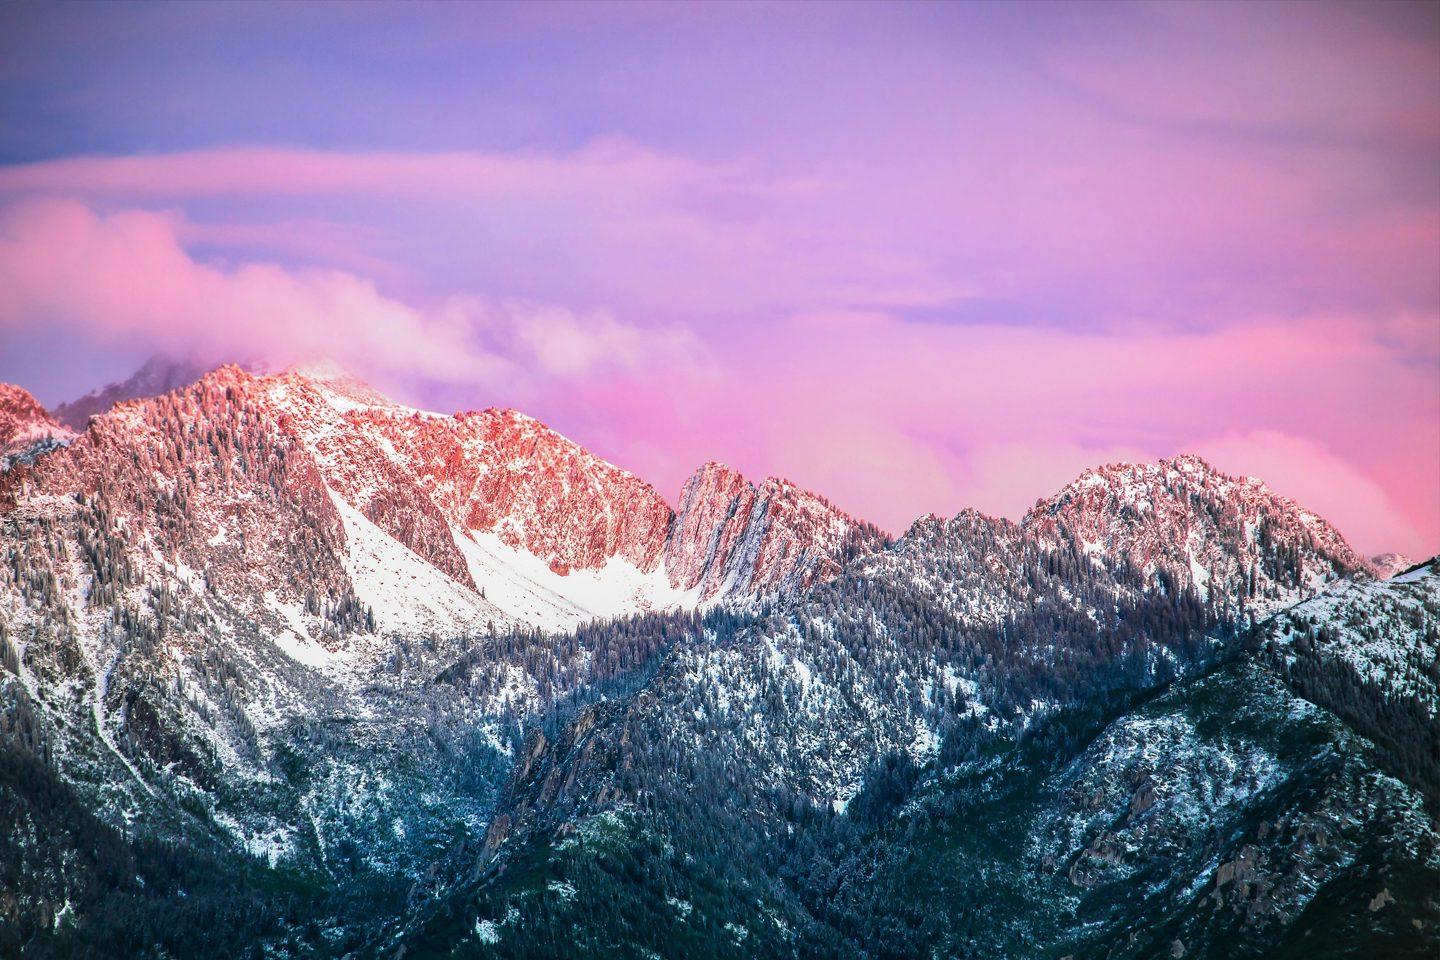 落基山脉的晚霞，粉红色的云彩笼罩在积雪崎岖的山峰上